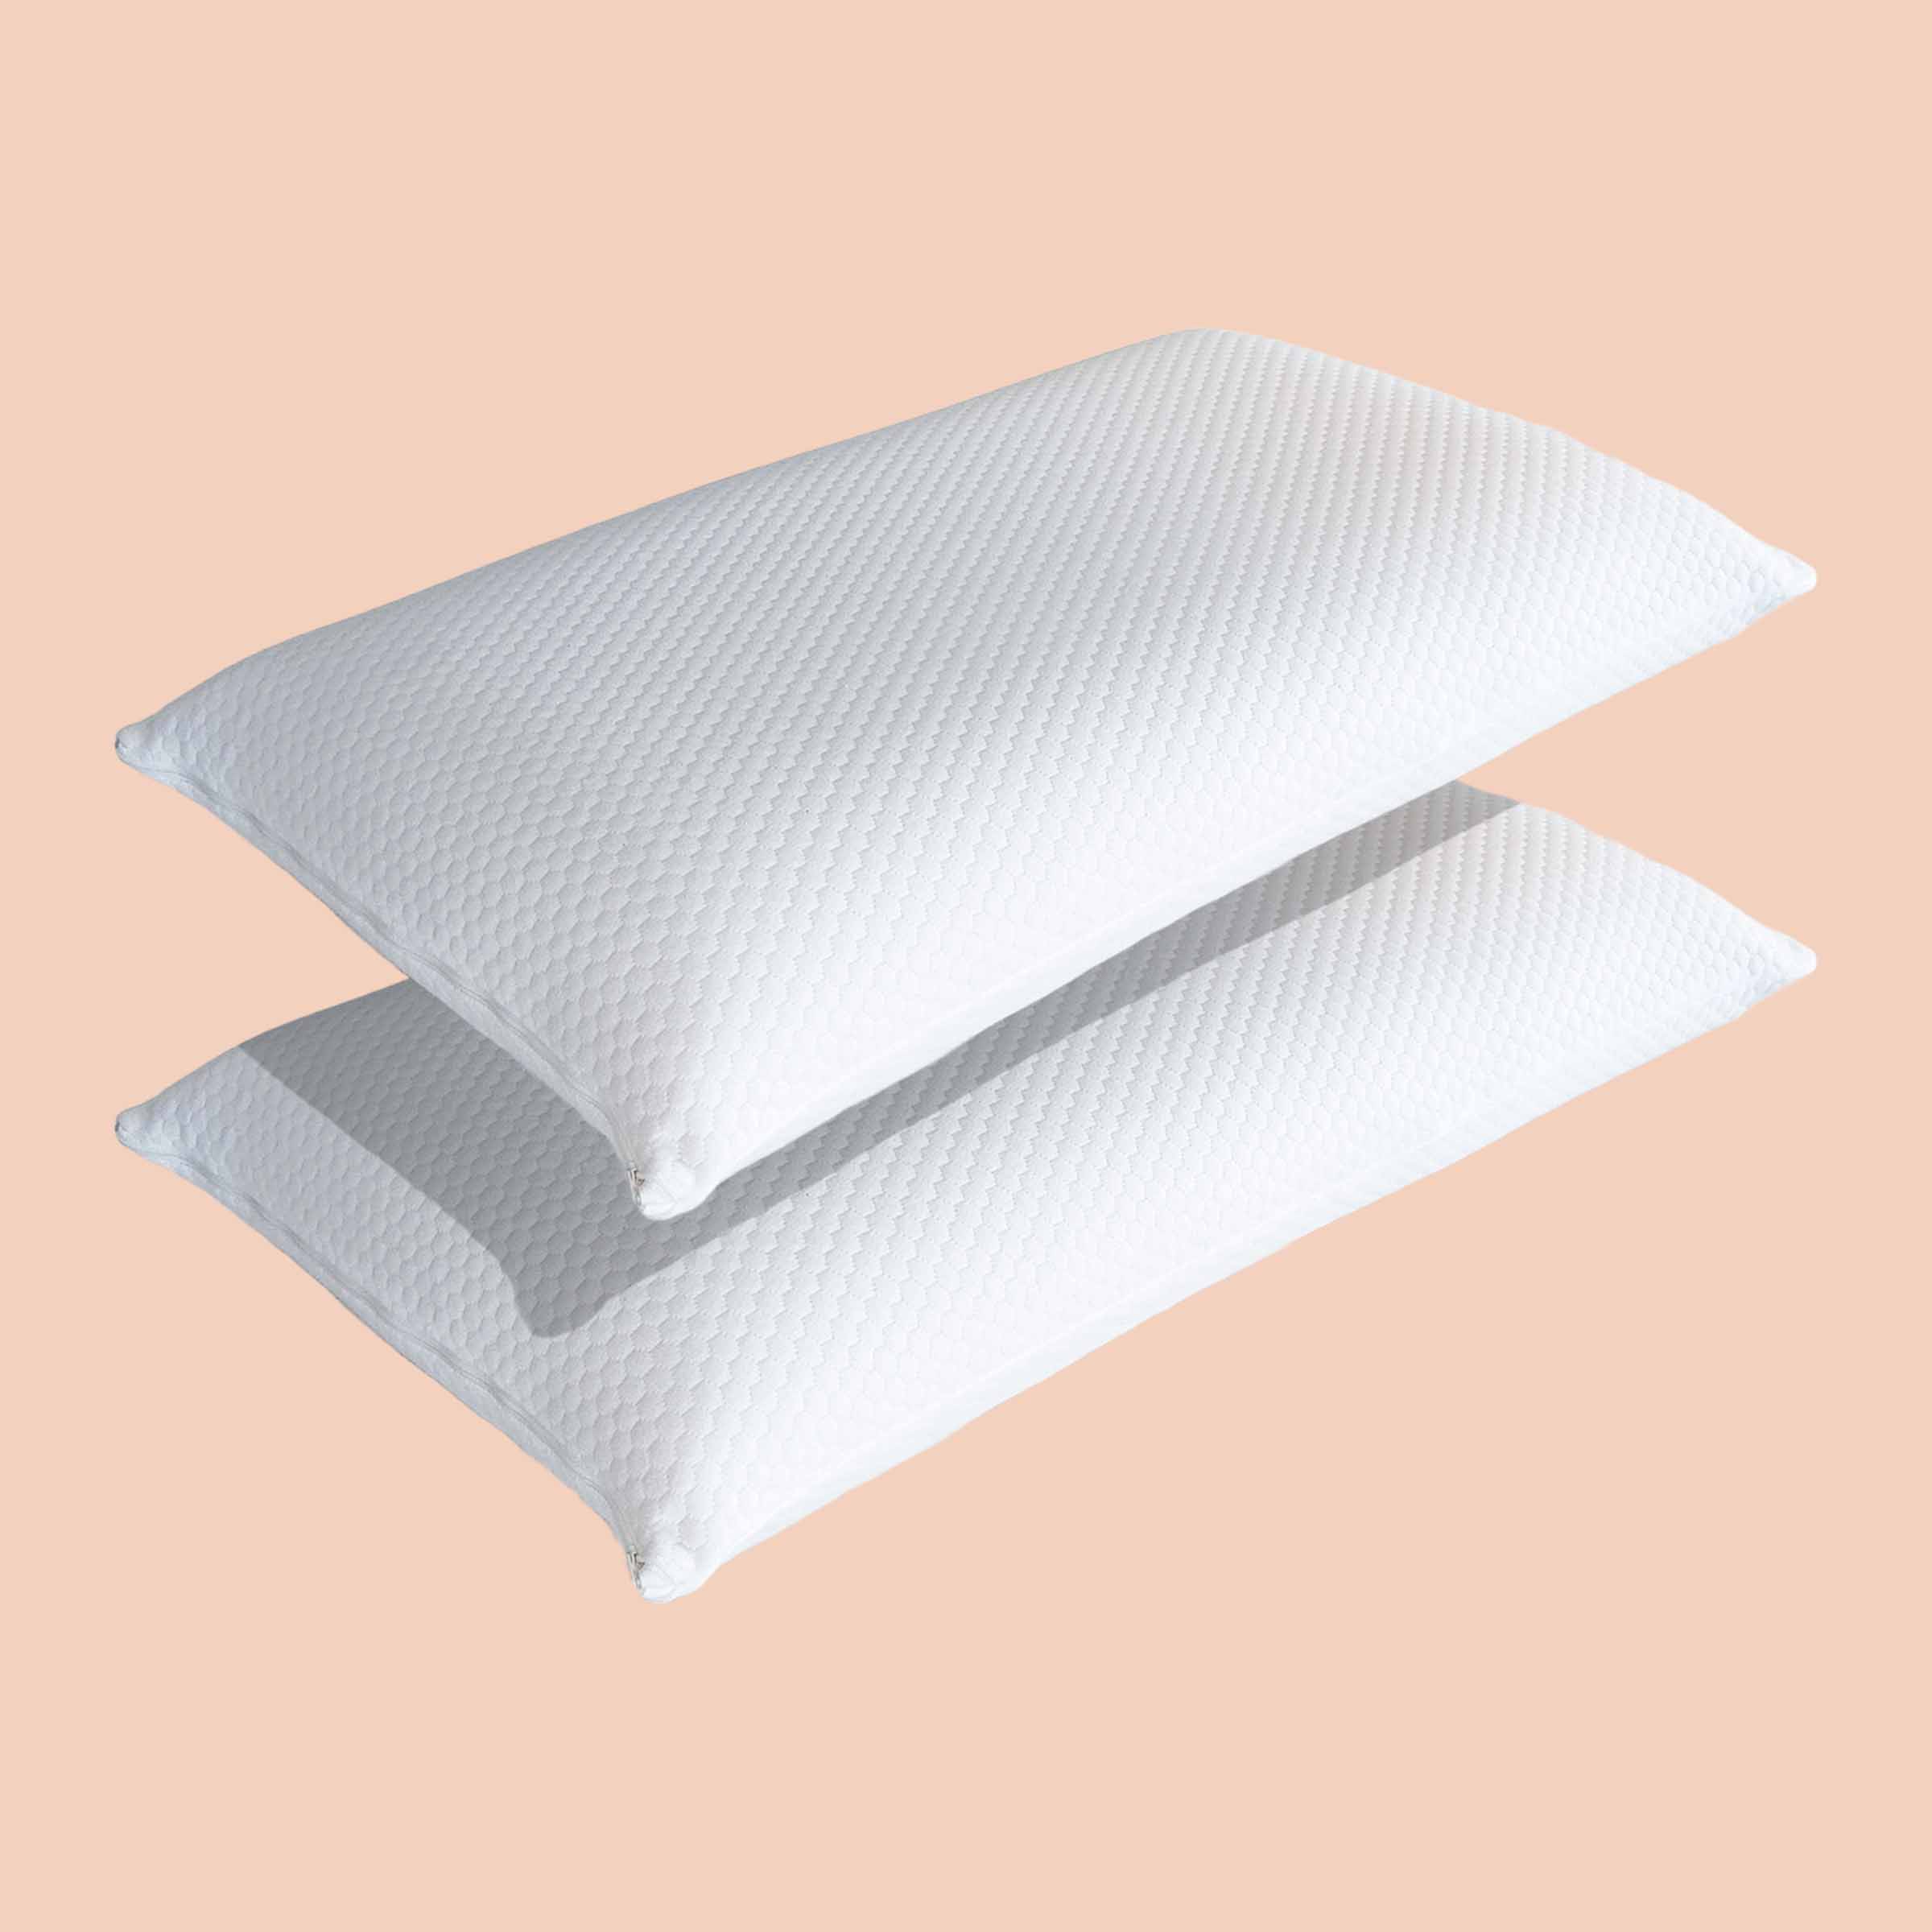 Due cuscini Memo di Beliamo in un bundle, progettati per offrire comfort e supporto ergonomico per un sonno riposante